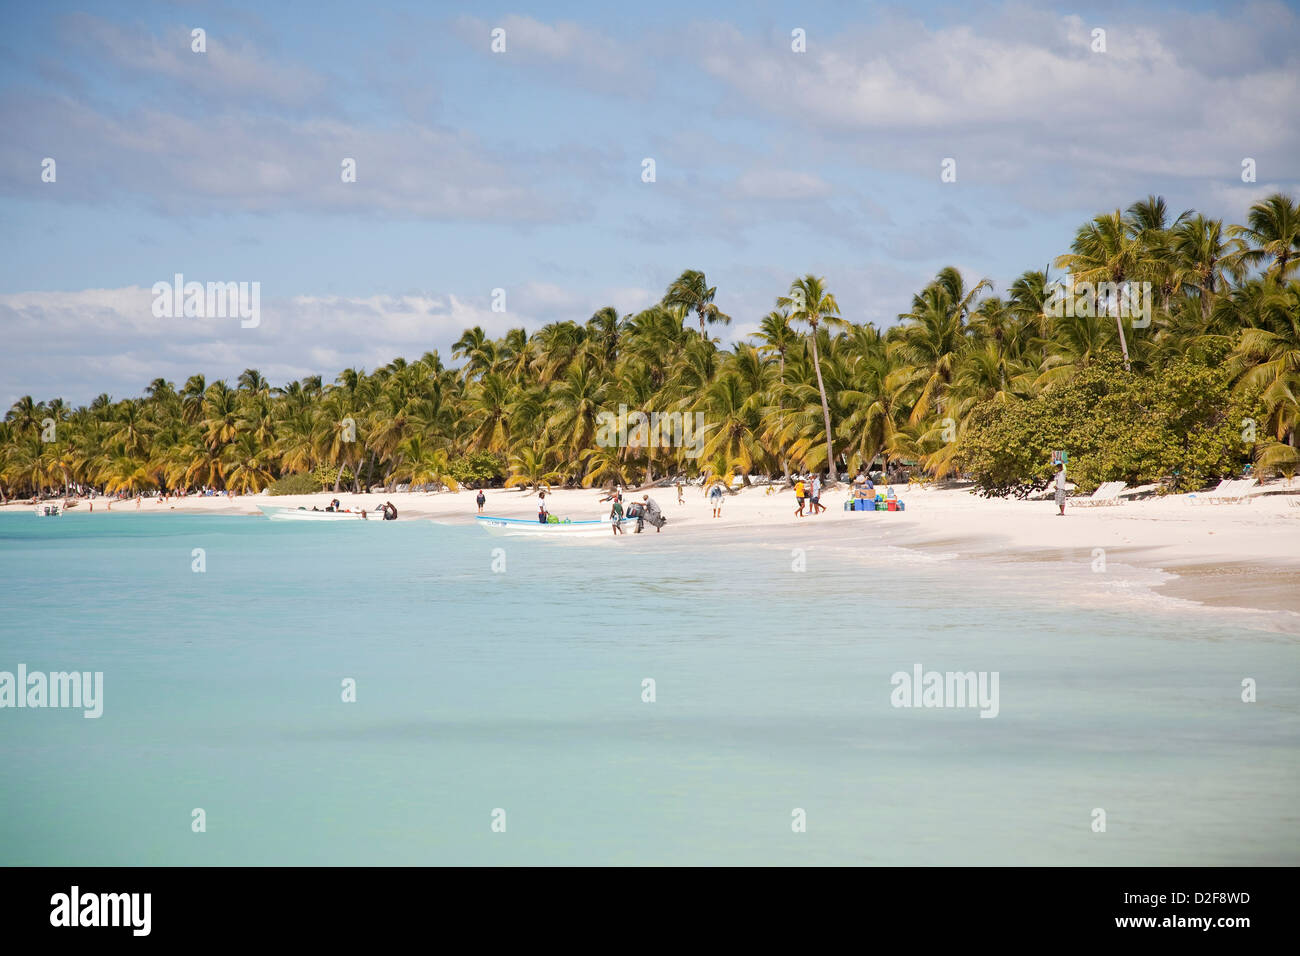 Nord, mer des Caraïbes, d'Hispaniola, la République dominicaine, l'île de Saona, de la mer et de la plage avec des palmiers Banque D'Images